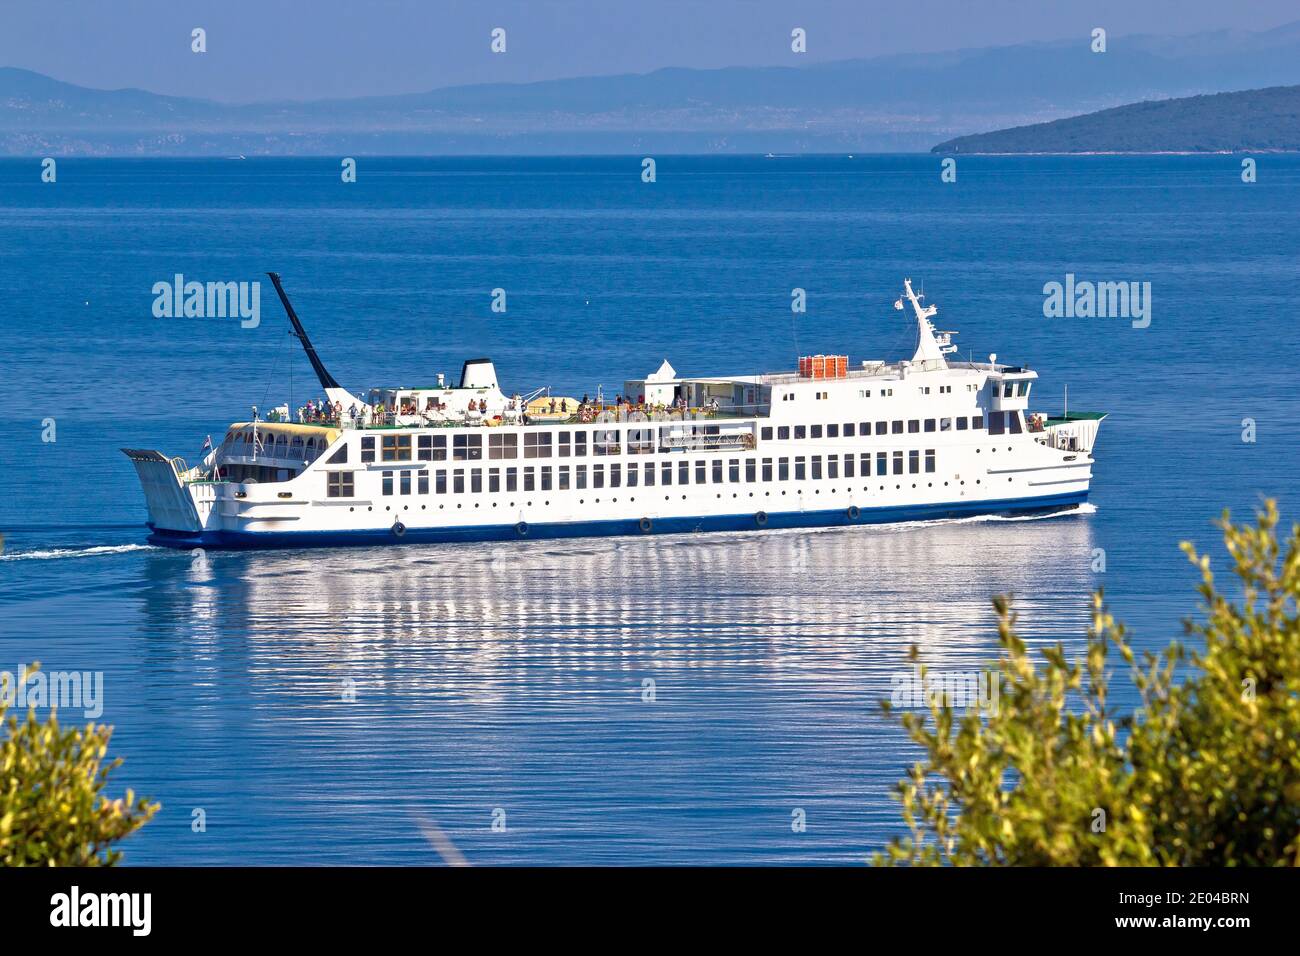 Traghetto Adriatico con vista mare blu, trasporto marittimo pubblico, Isole Cres e Krk, Croazia Foto Stock